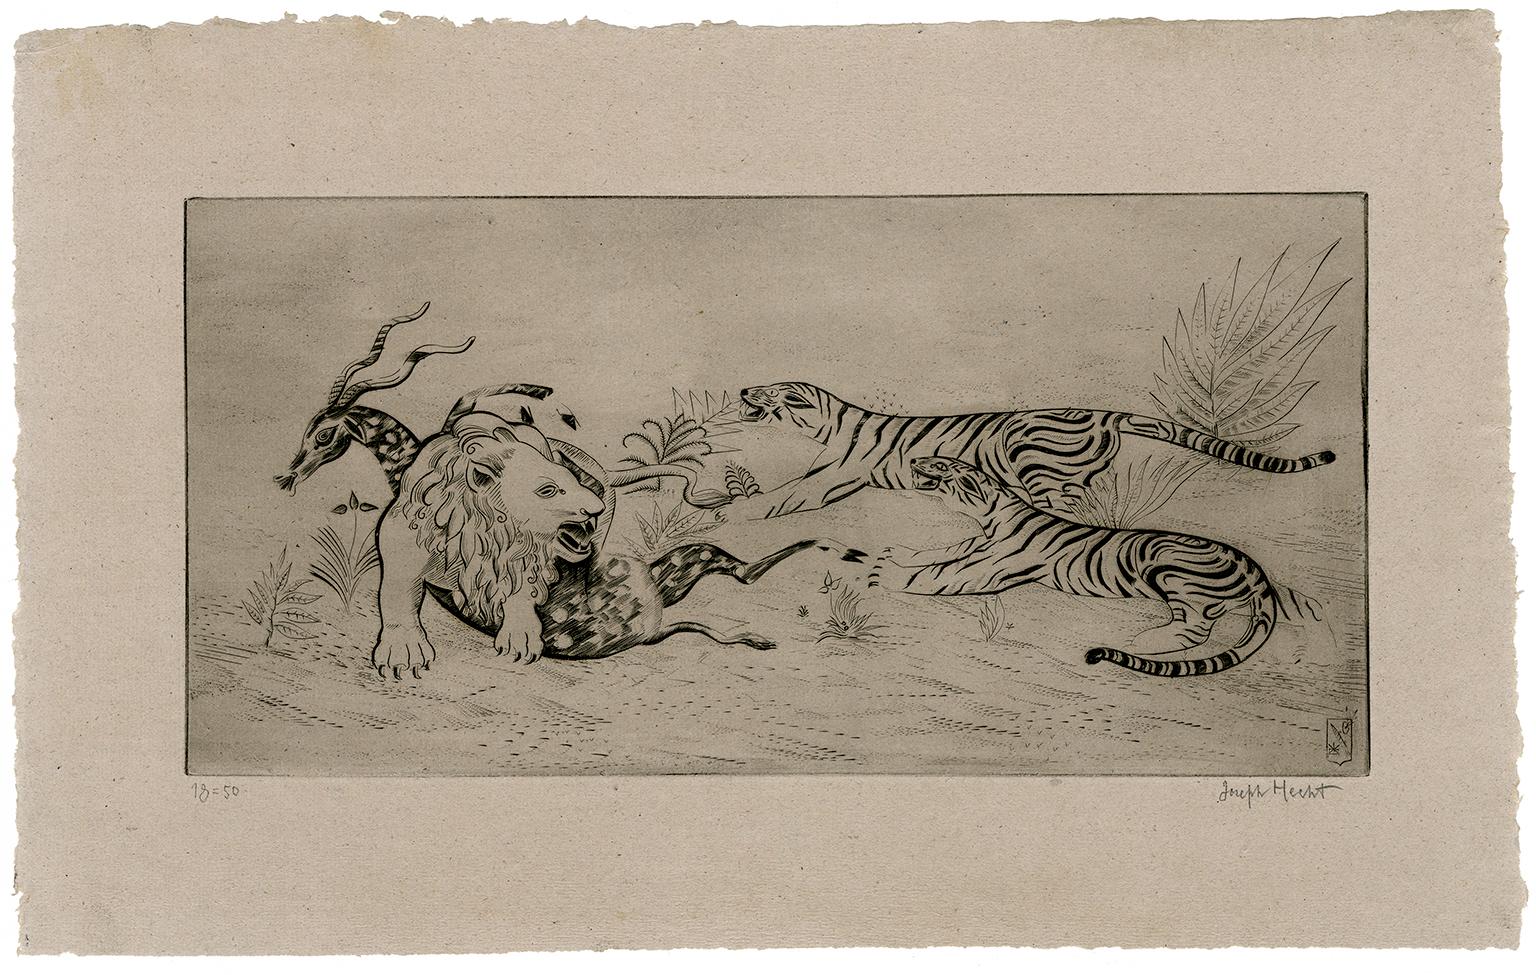 Lion Défendant sa Proie (Lion Defending Its Prey) - Print by Joseph Hecht